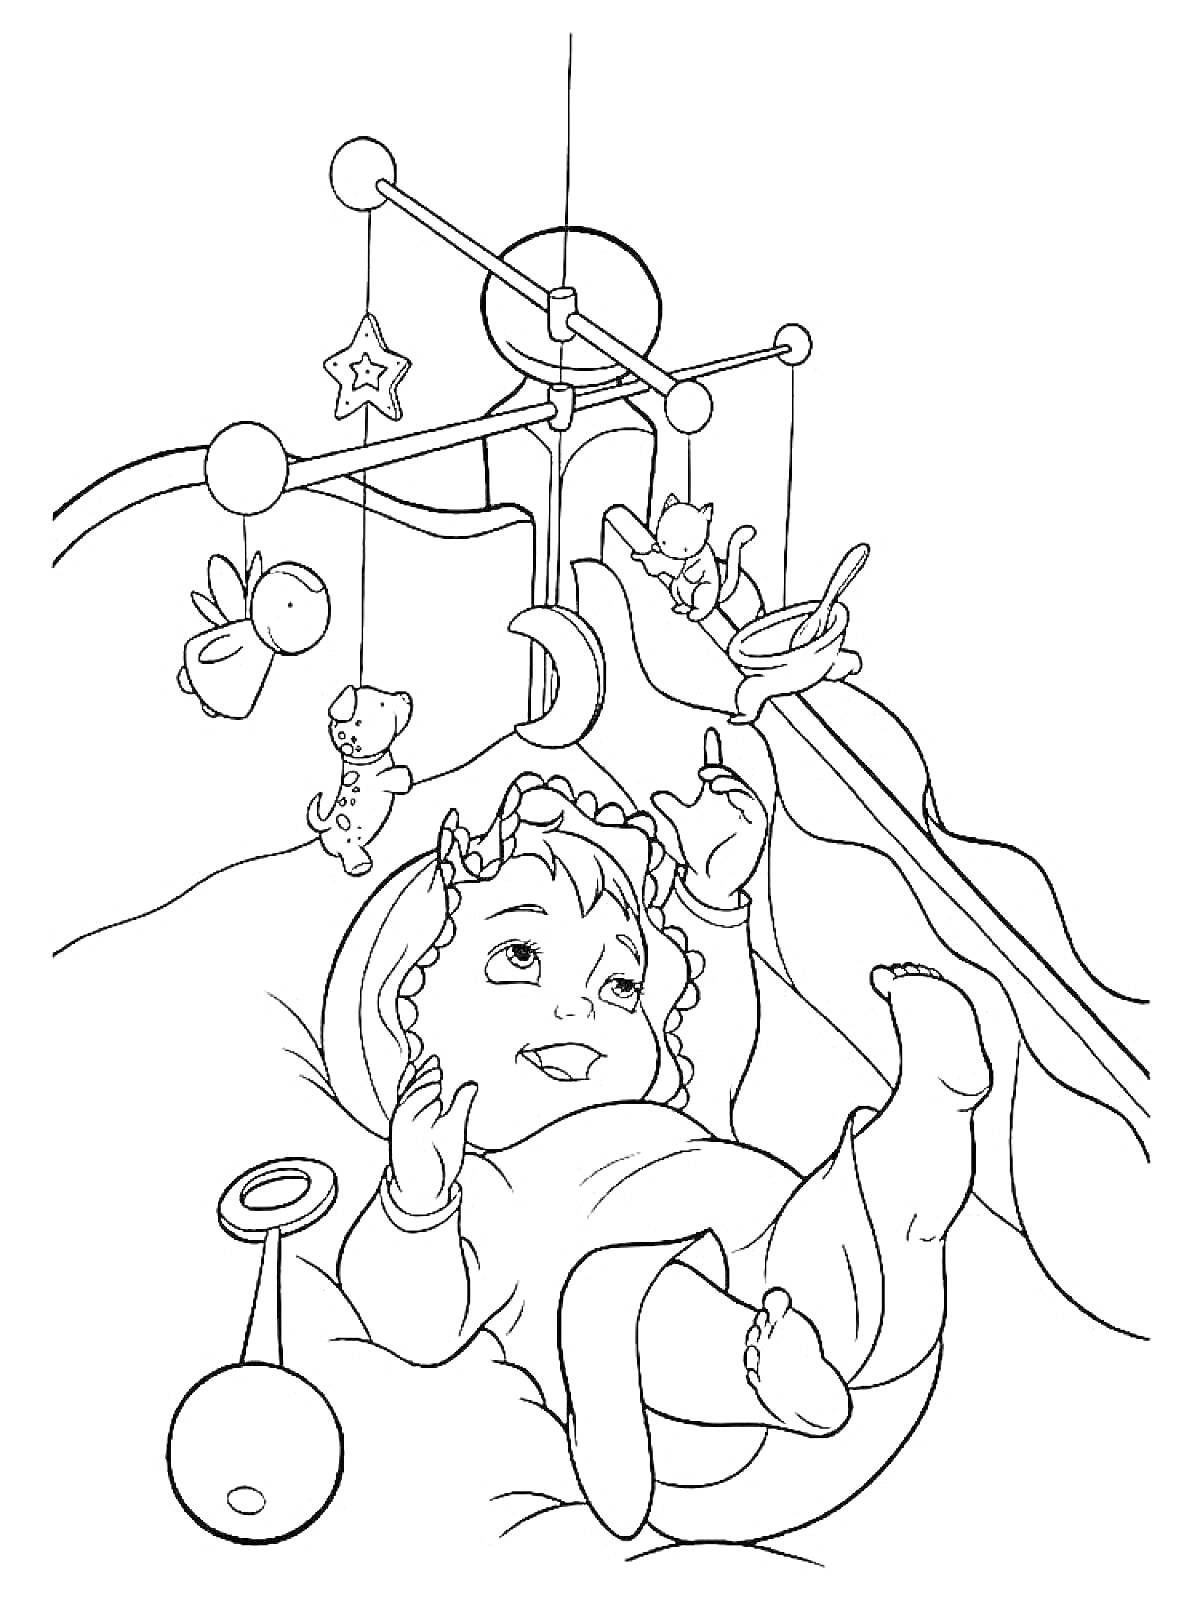 Раскраска Младенец лежит в кроватке с мобильной игрушкой, погремушкой и ложкой